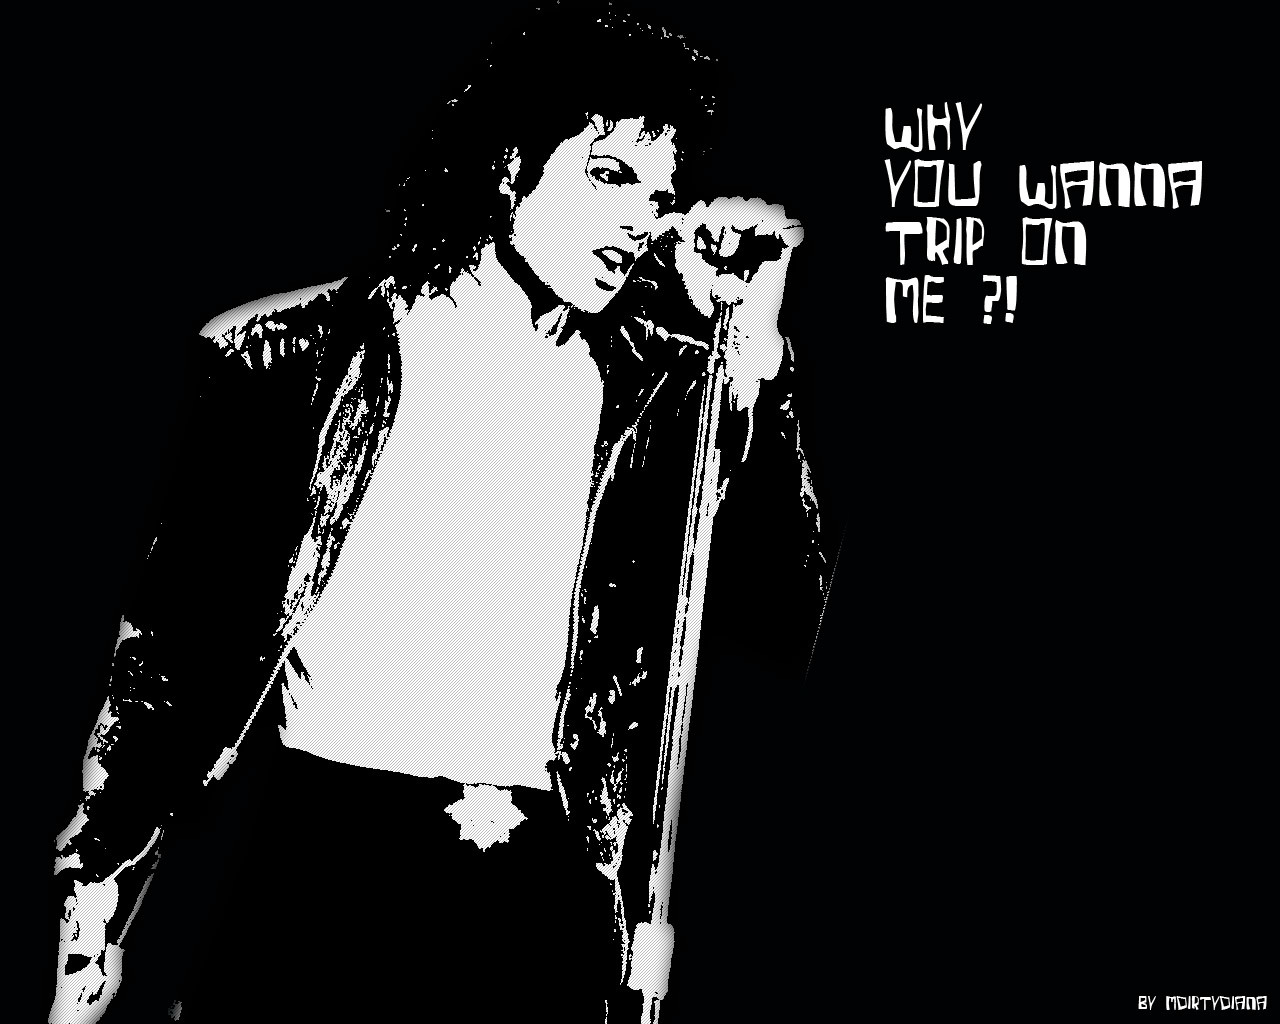 壁纸1280x1024迈克杰克逊 高積遜 Michael Jackson 网友制作壁纸 壁纸1壁纸 迈克杰克逊（高積遜壁纸 迈克杰克逊（高積遜图片 迈克杰克逊（高積遜素材 明星壁纸 明星图库 明星图片素材桌面壁纸